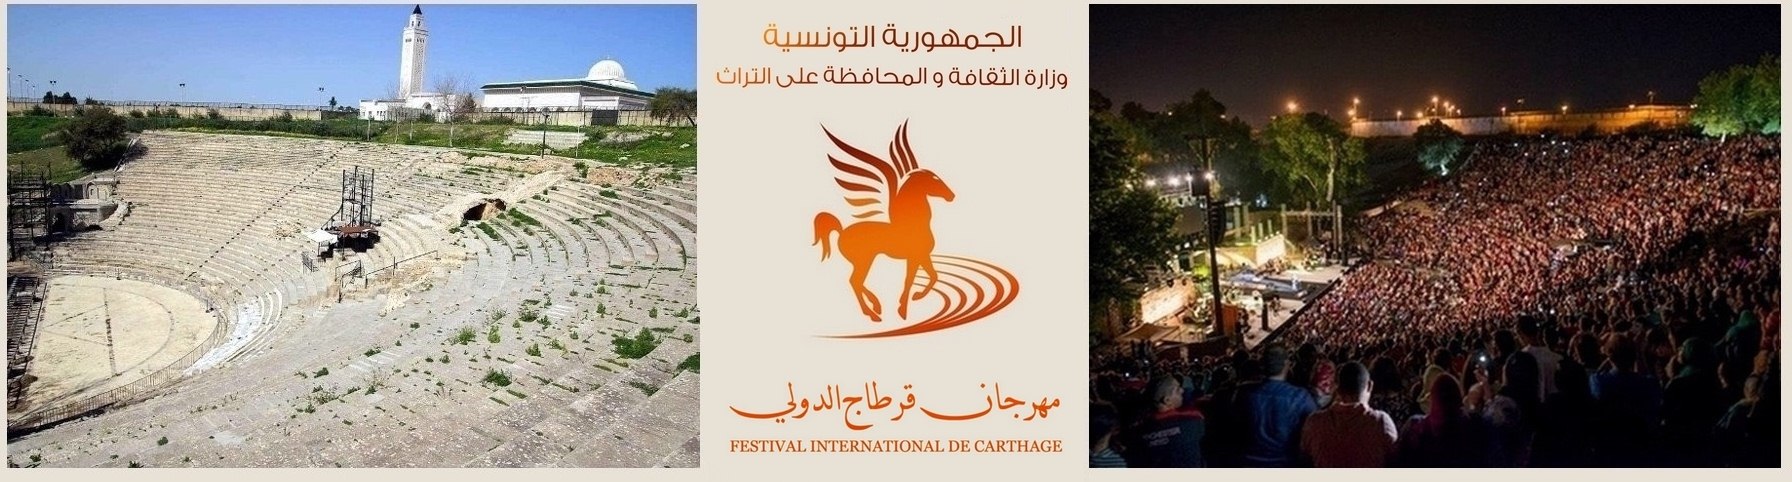 Le théâtre antique de Carthage au cours du festival internatiuonal de Carthage